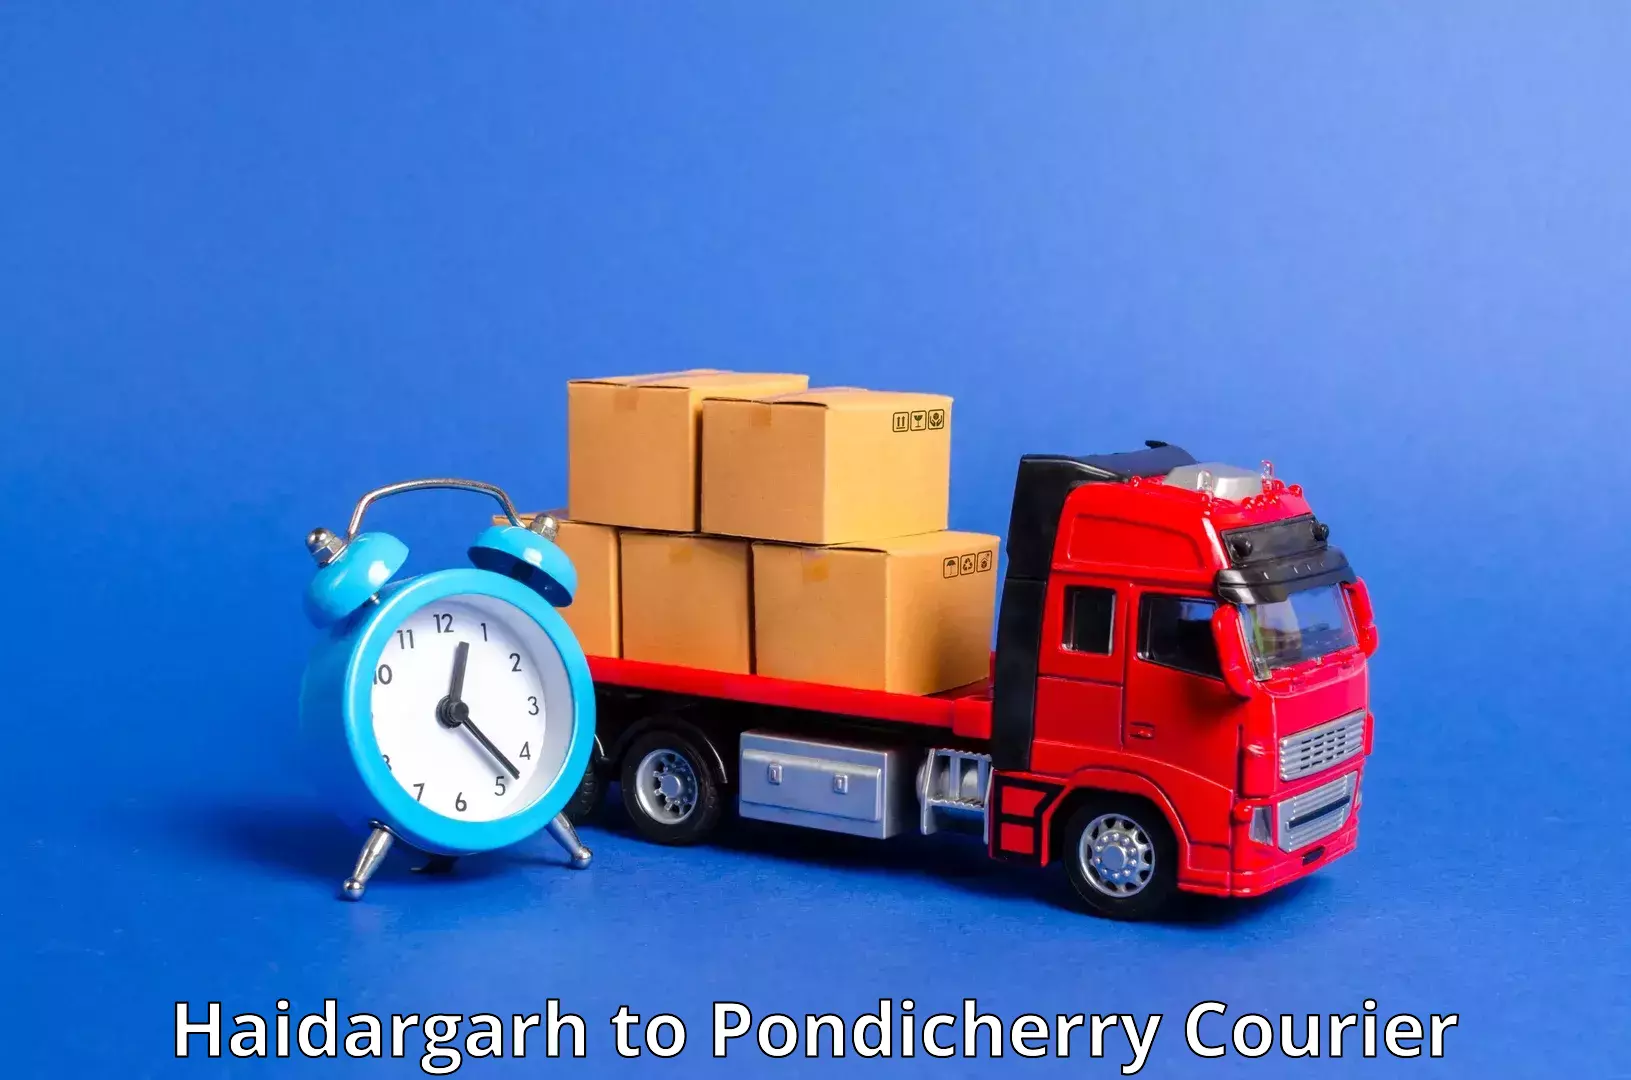 On-demand courier Haidargarh to Pondicherry University